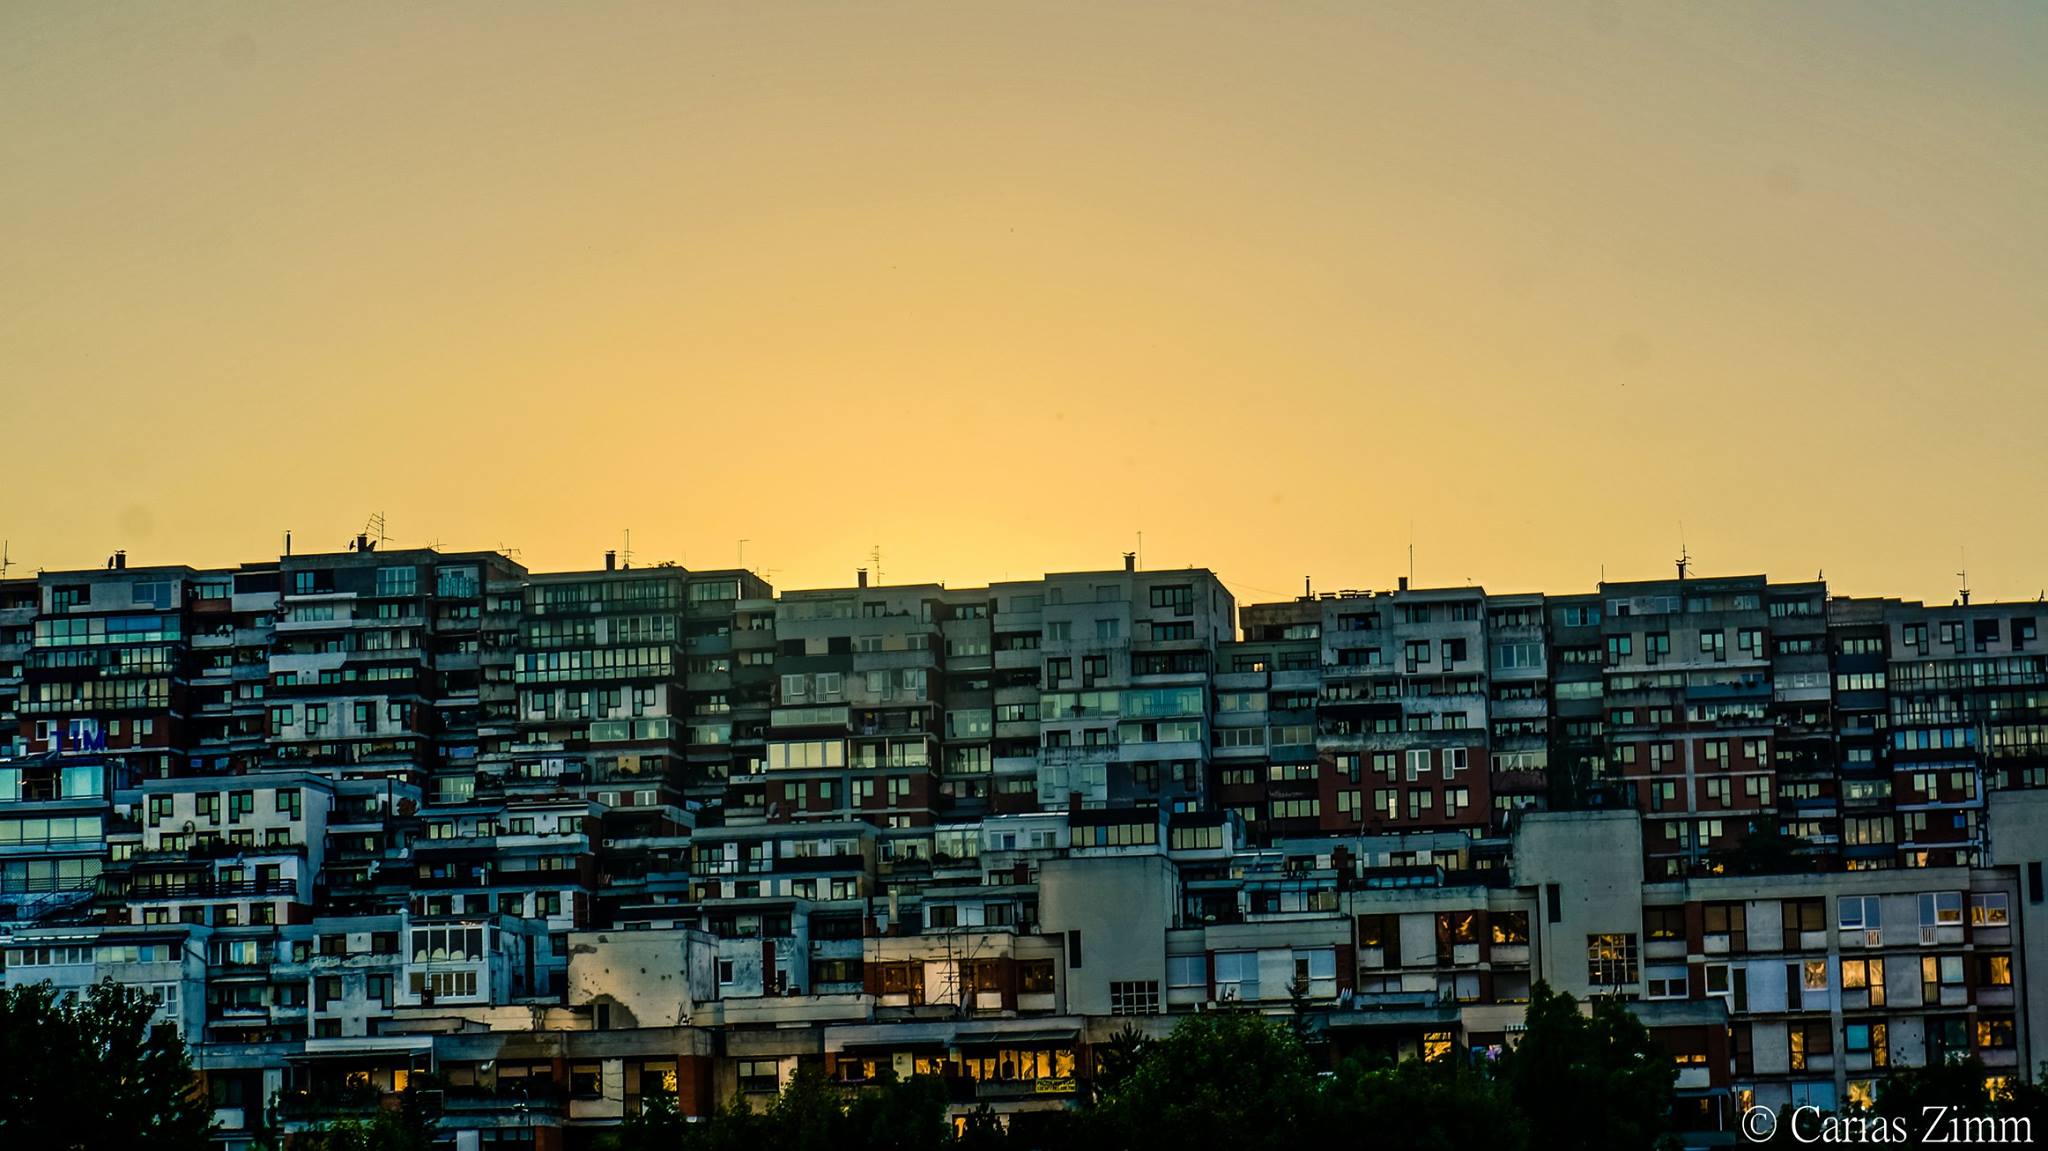 Cigla po cigla - naselje (Sarajevo, foto: Carias Zimm)